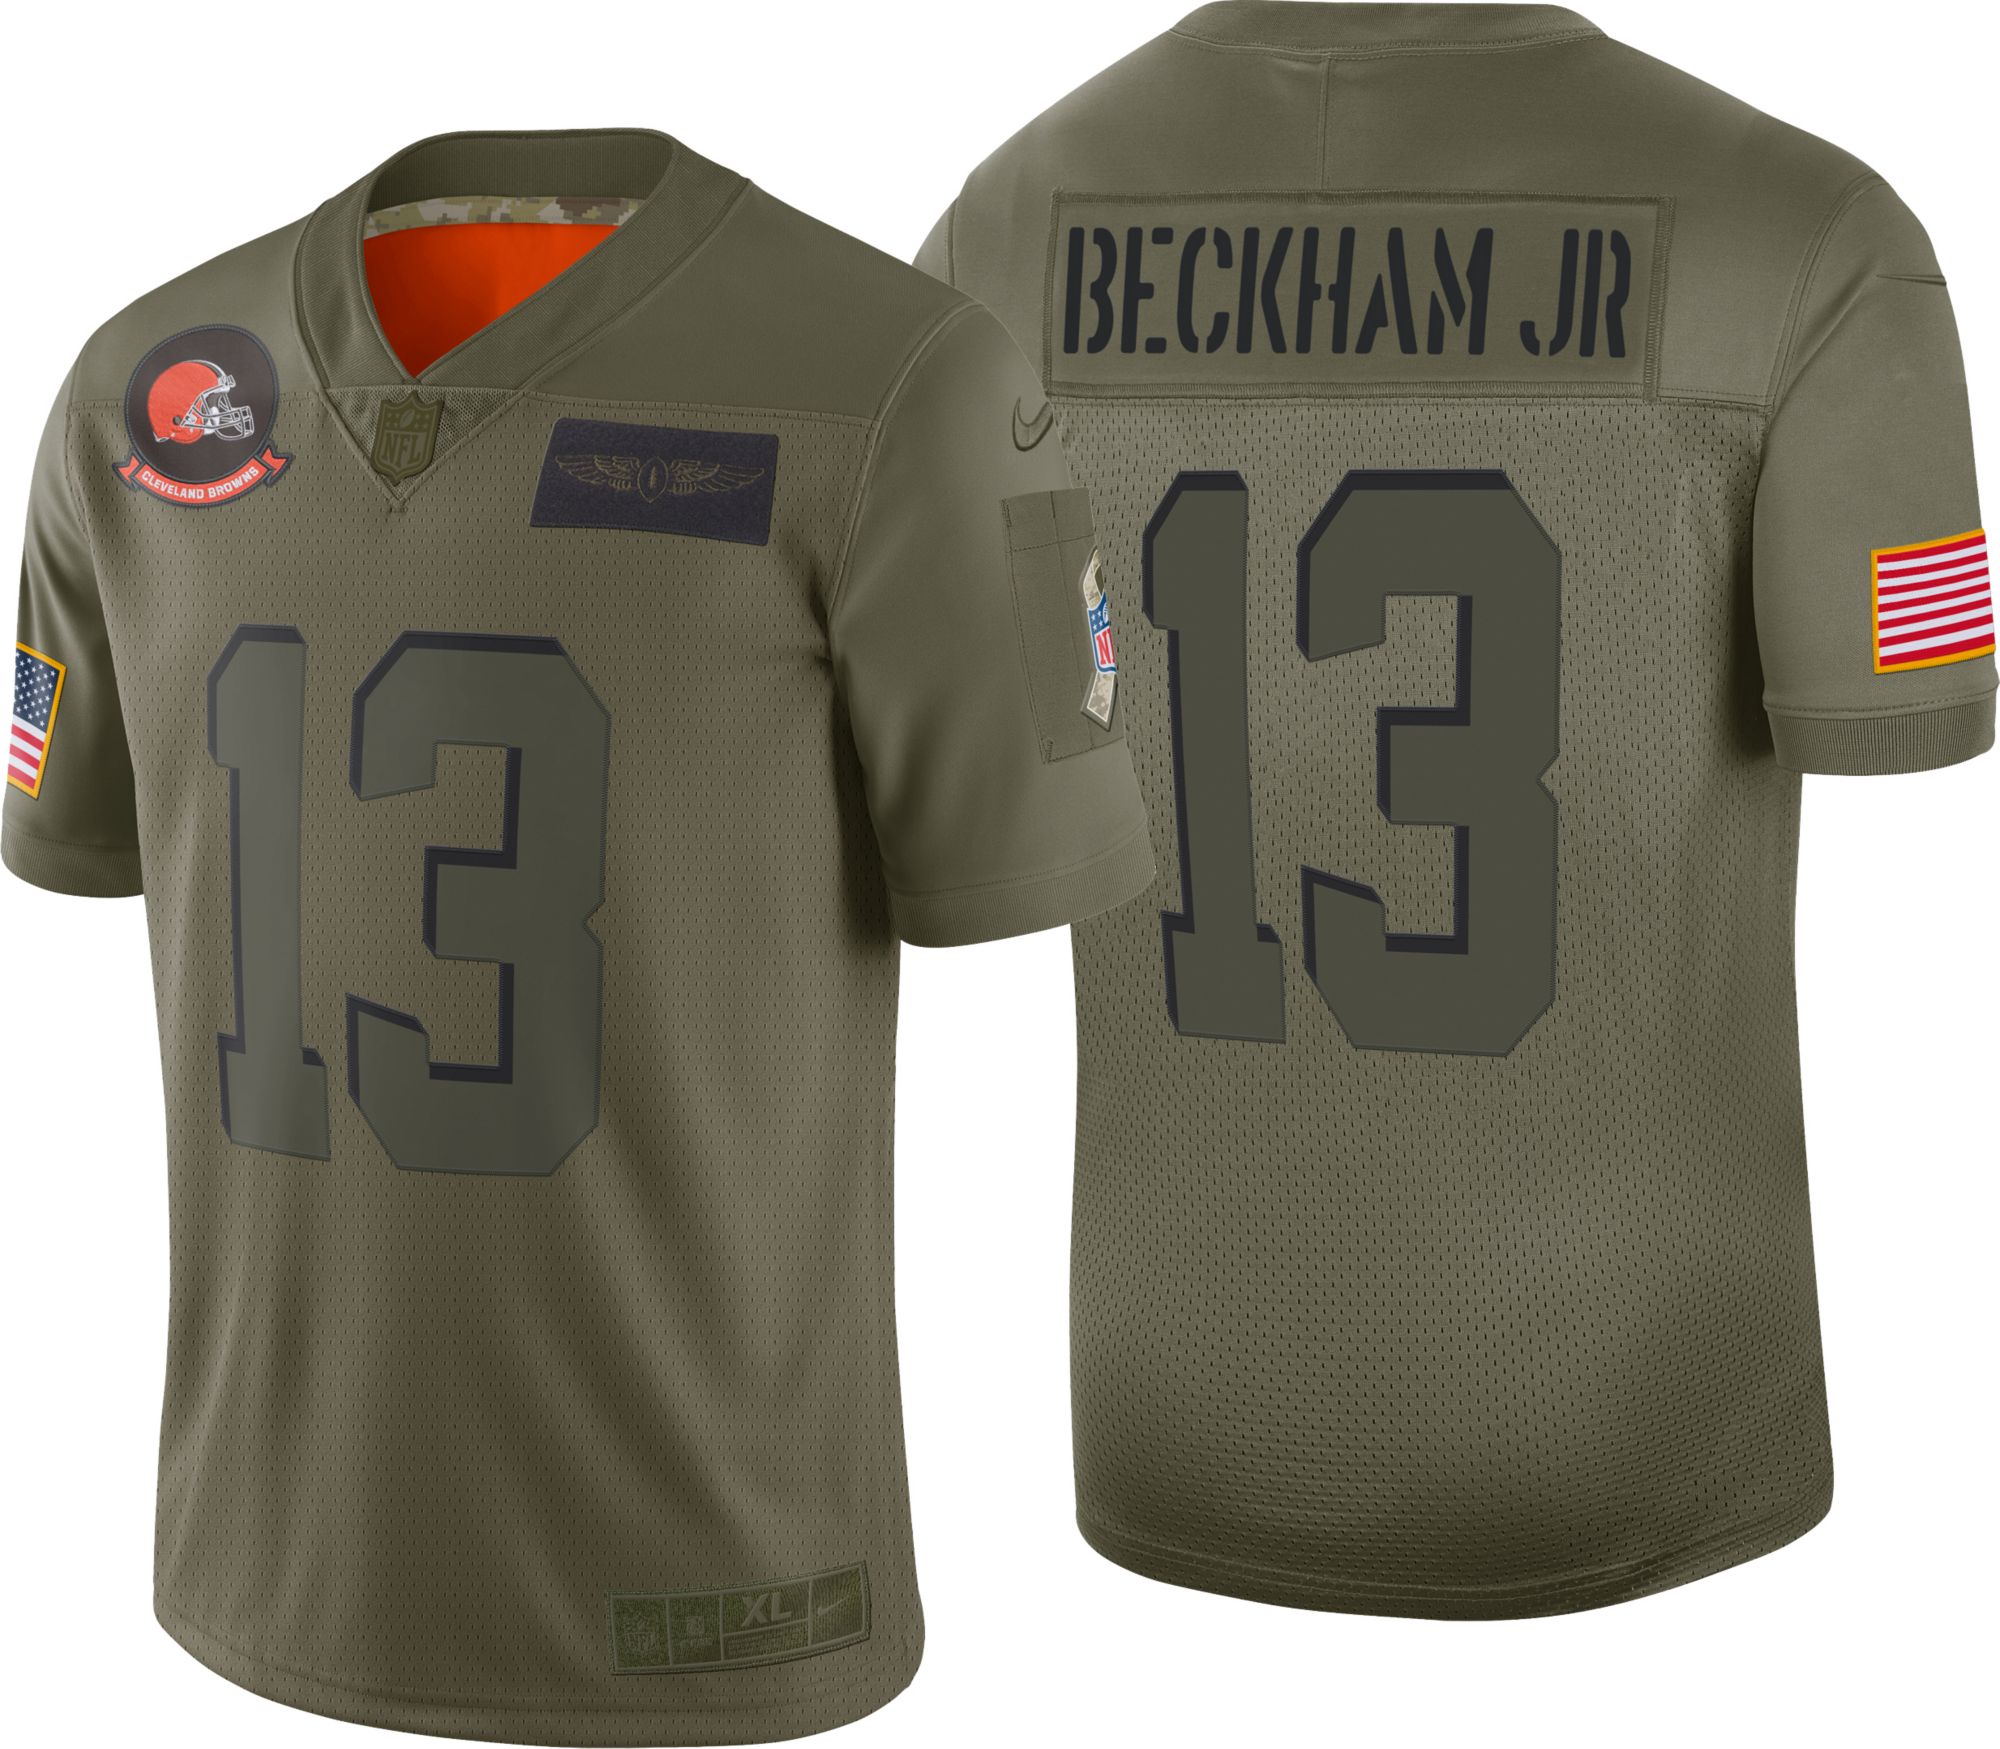 beckham jr limited jersey